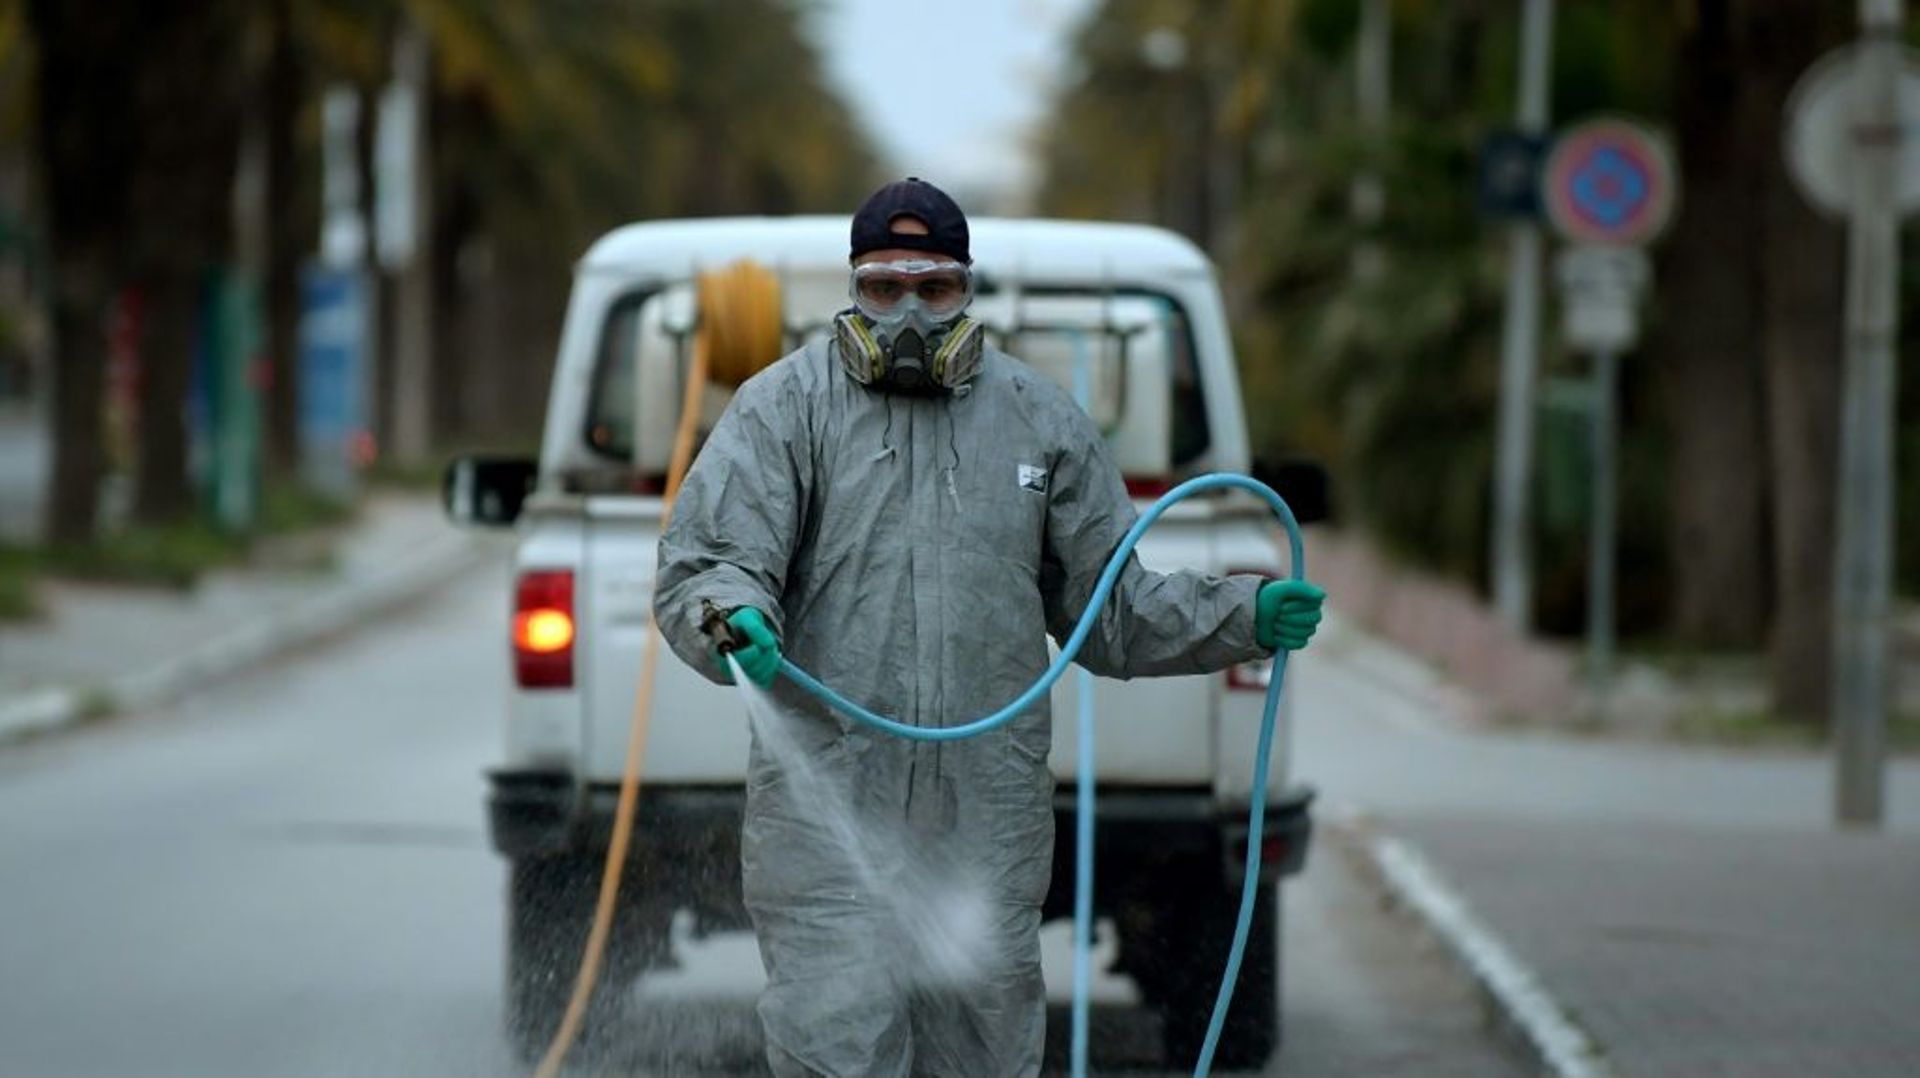 Un employé municipal désinfecte une rue pendant l'épidémie de coronavirus, le 1er avril 2020 à Tunis